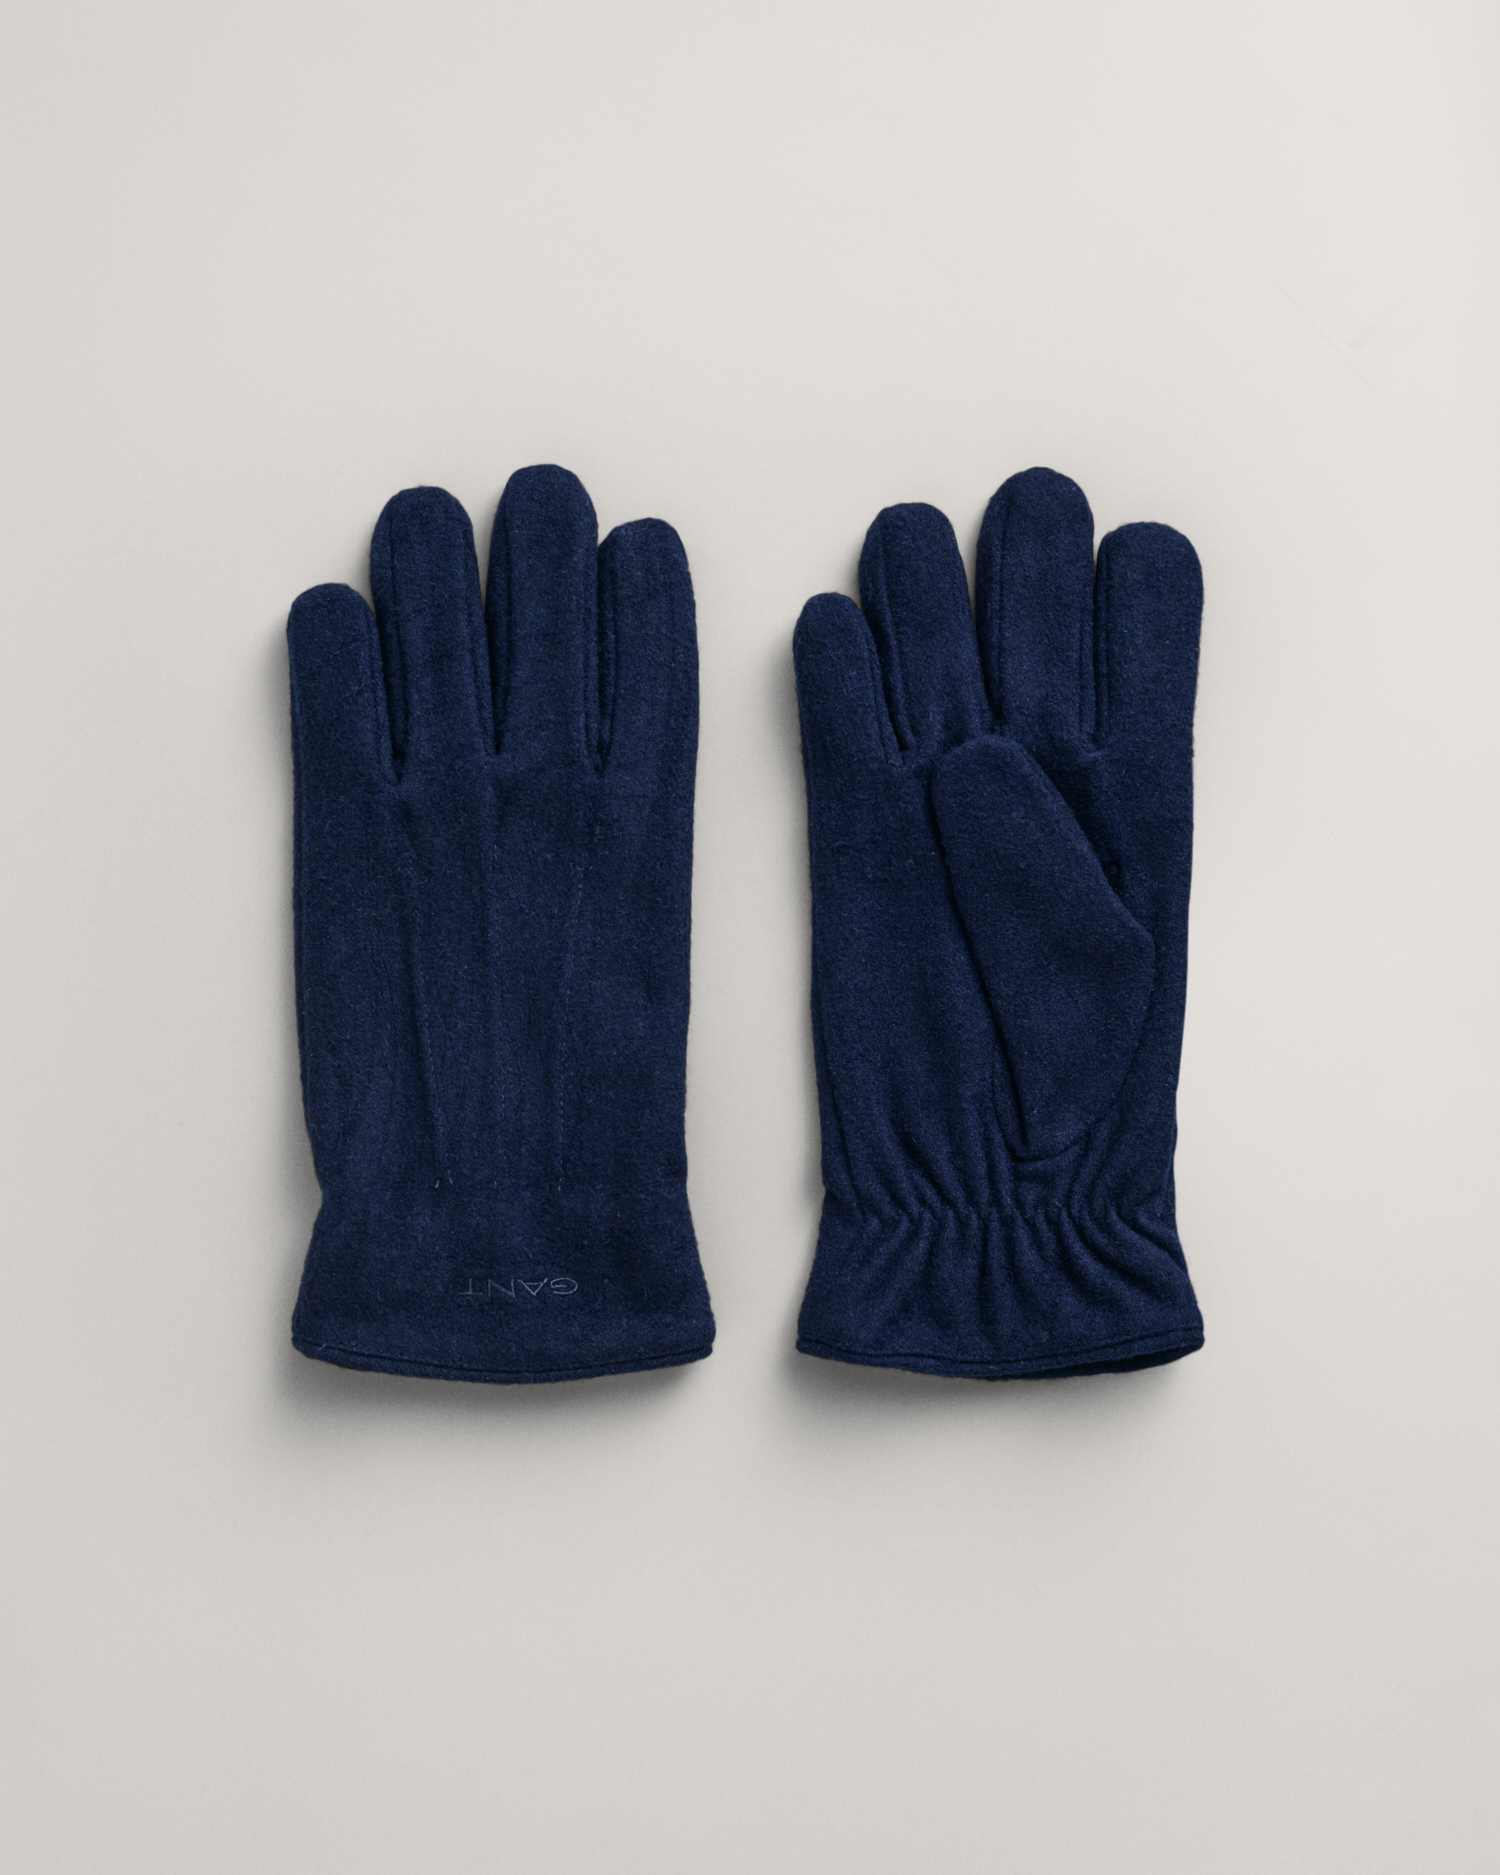 Gants Noirs Homme Adidas 3s Gloves Condu